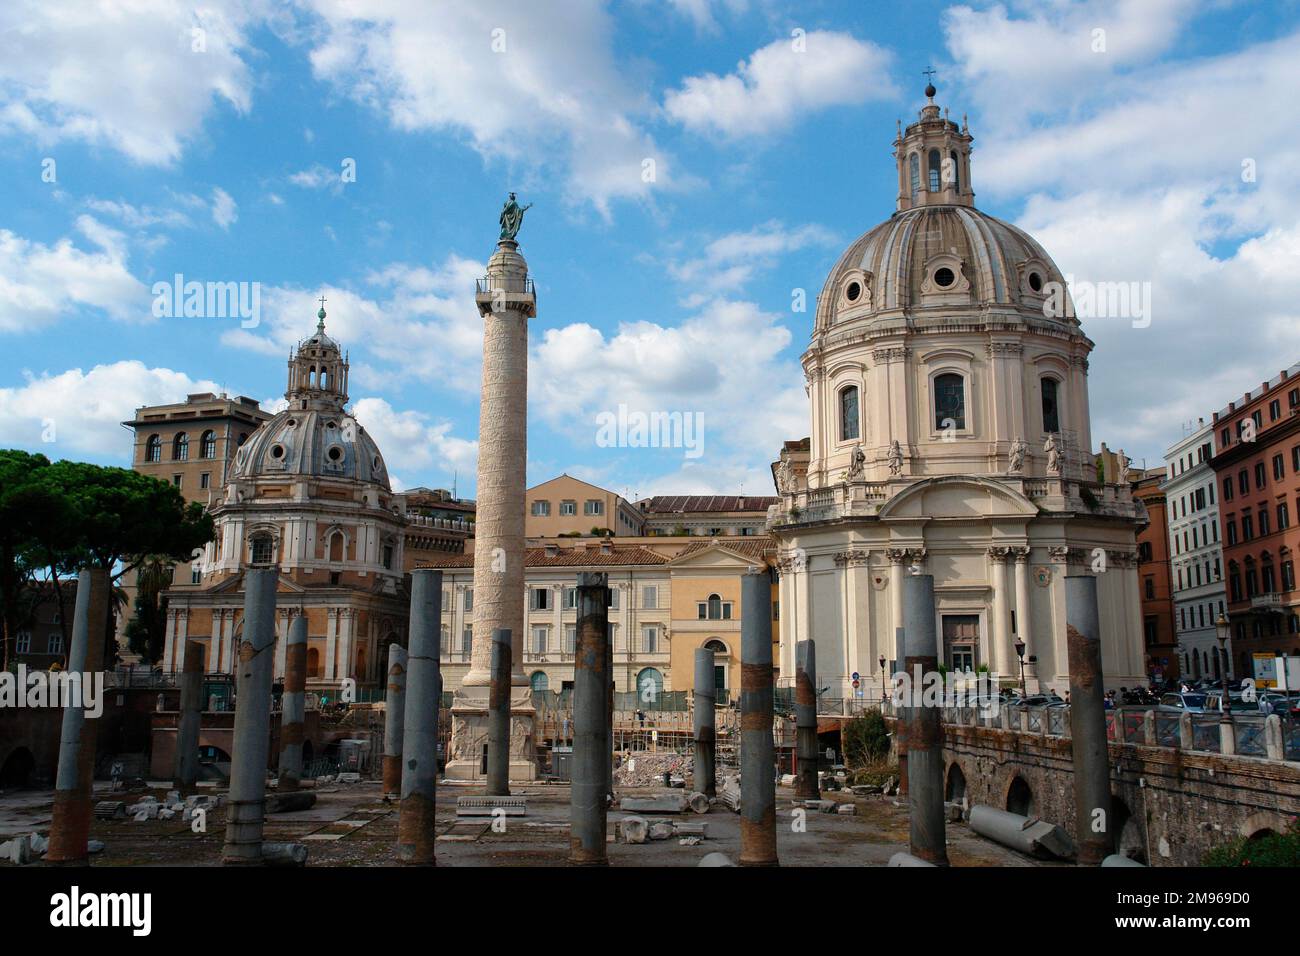 Blick auf die Trajanssäule, mit dem Petersdom auf der rechten Seite, in Rom, Italien. Die Säule ist berühmt für ihr spiralförmiges Relief zum Gedenken an Kaiser Trajans Sieg in den Dacianischen Kriegen. Stockfoto